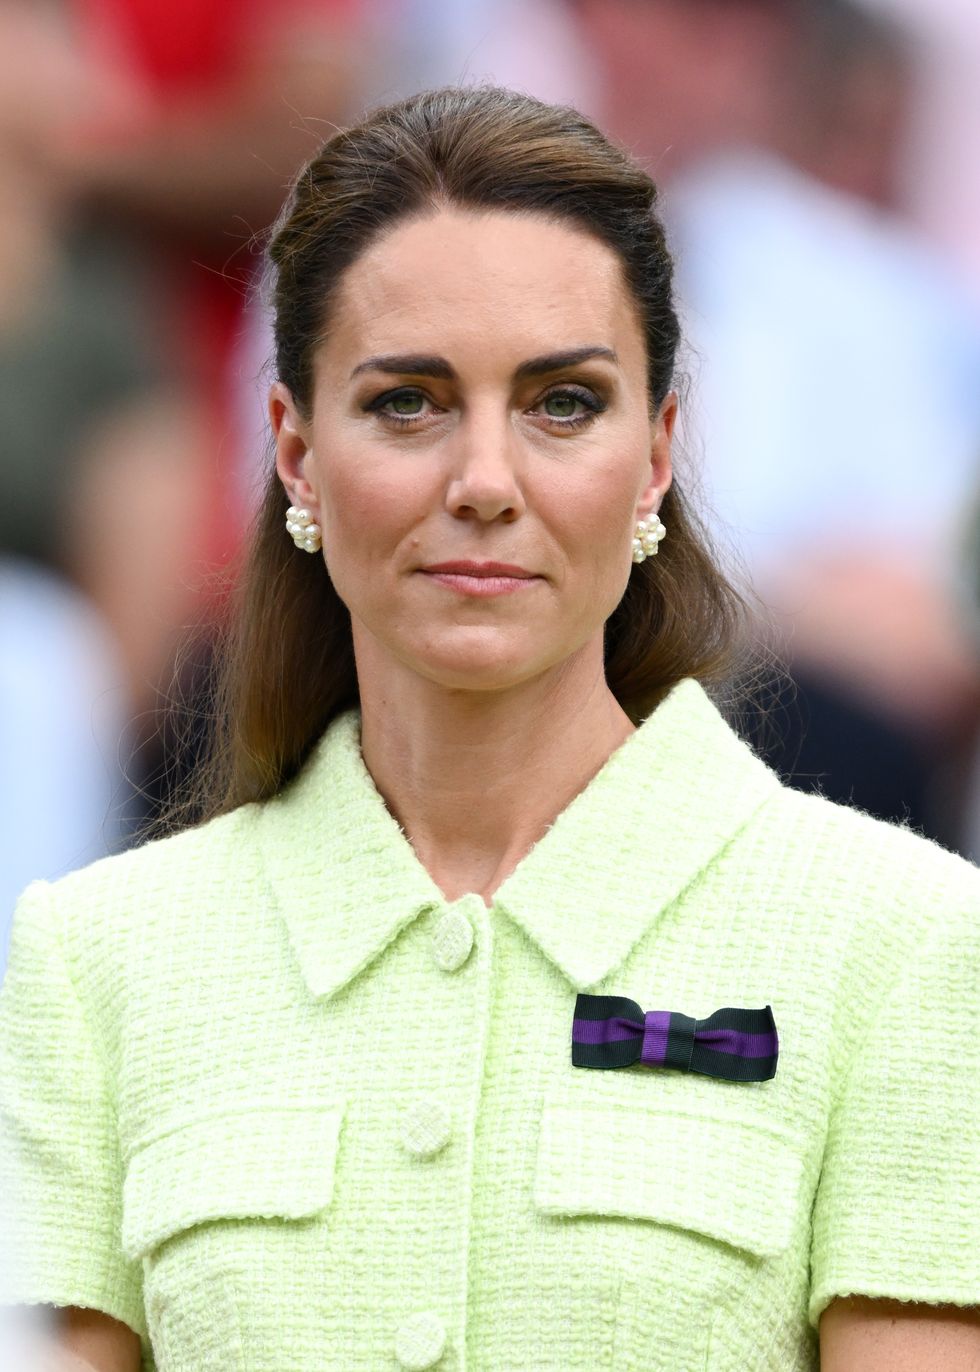 Metadata on Kate Middleton's Portrait Confirms Photo Edits